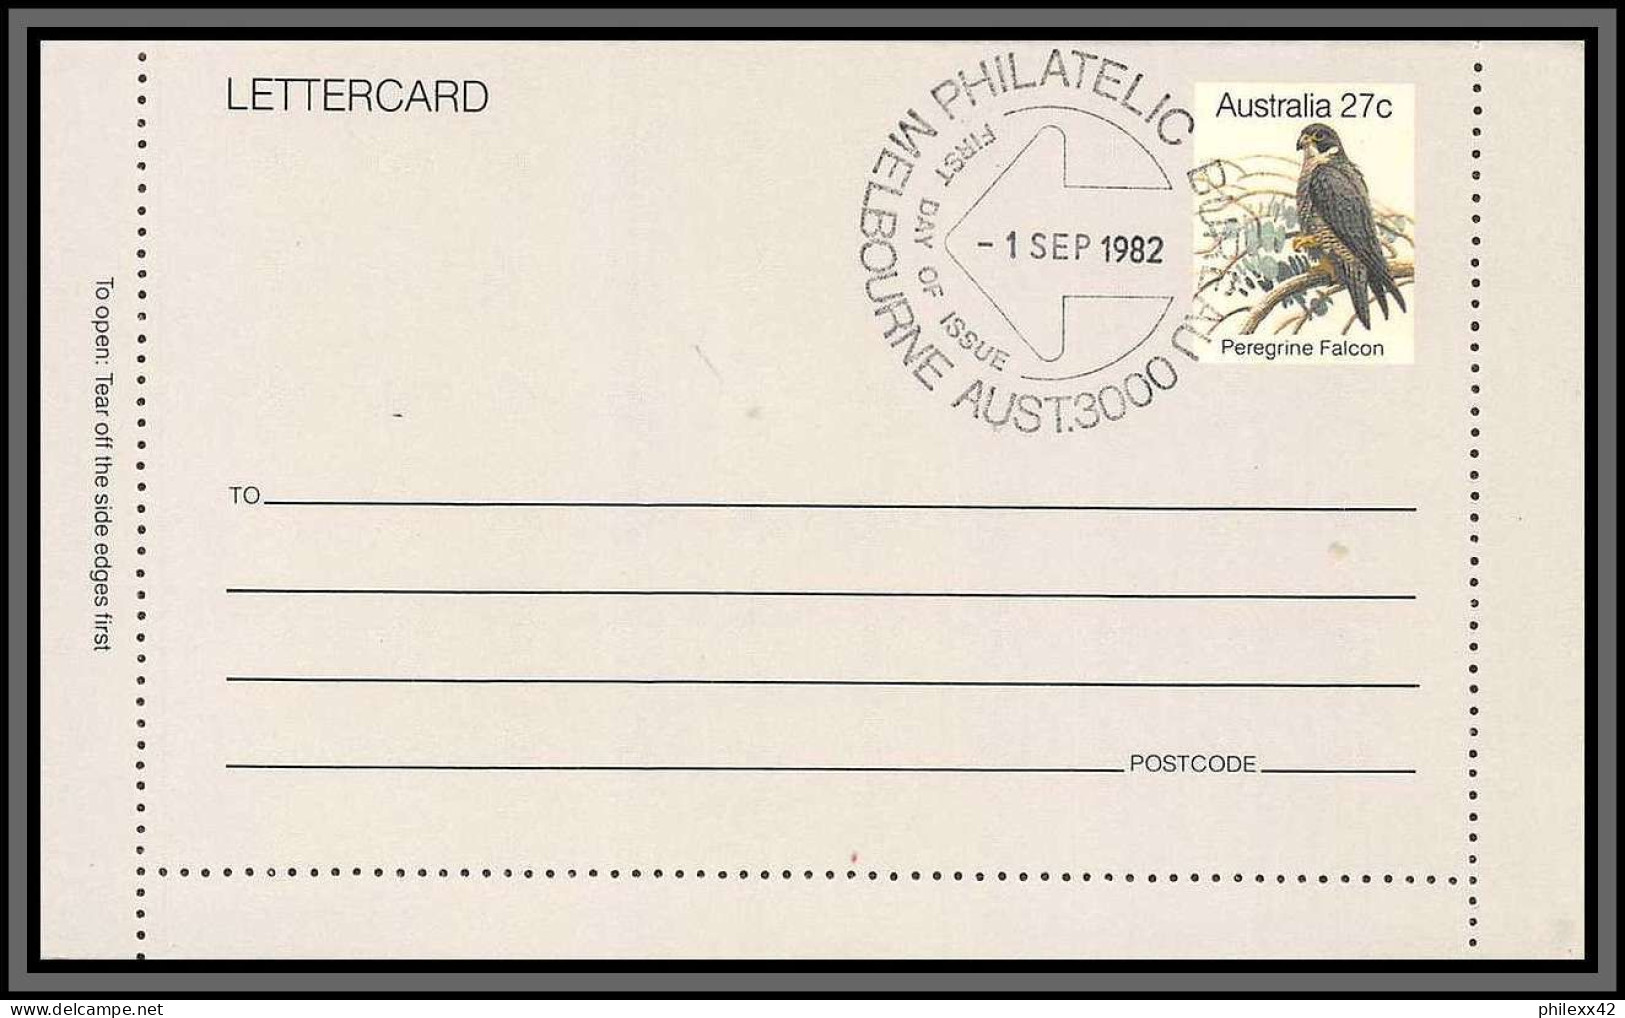 11253 PEREGRINE FALCON Faucon Pèlerin 1982 Entier Stationery Letter Card Australie Australia  - Enteros Postales